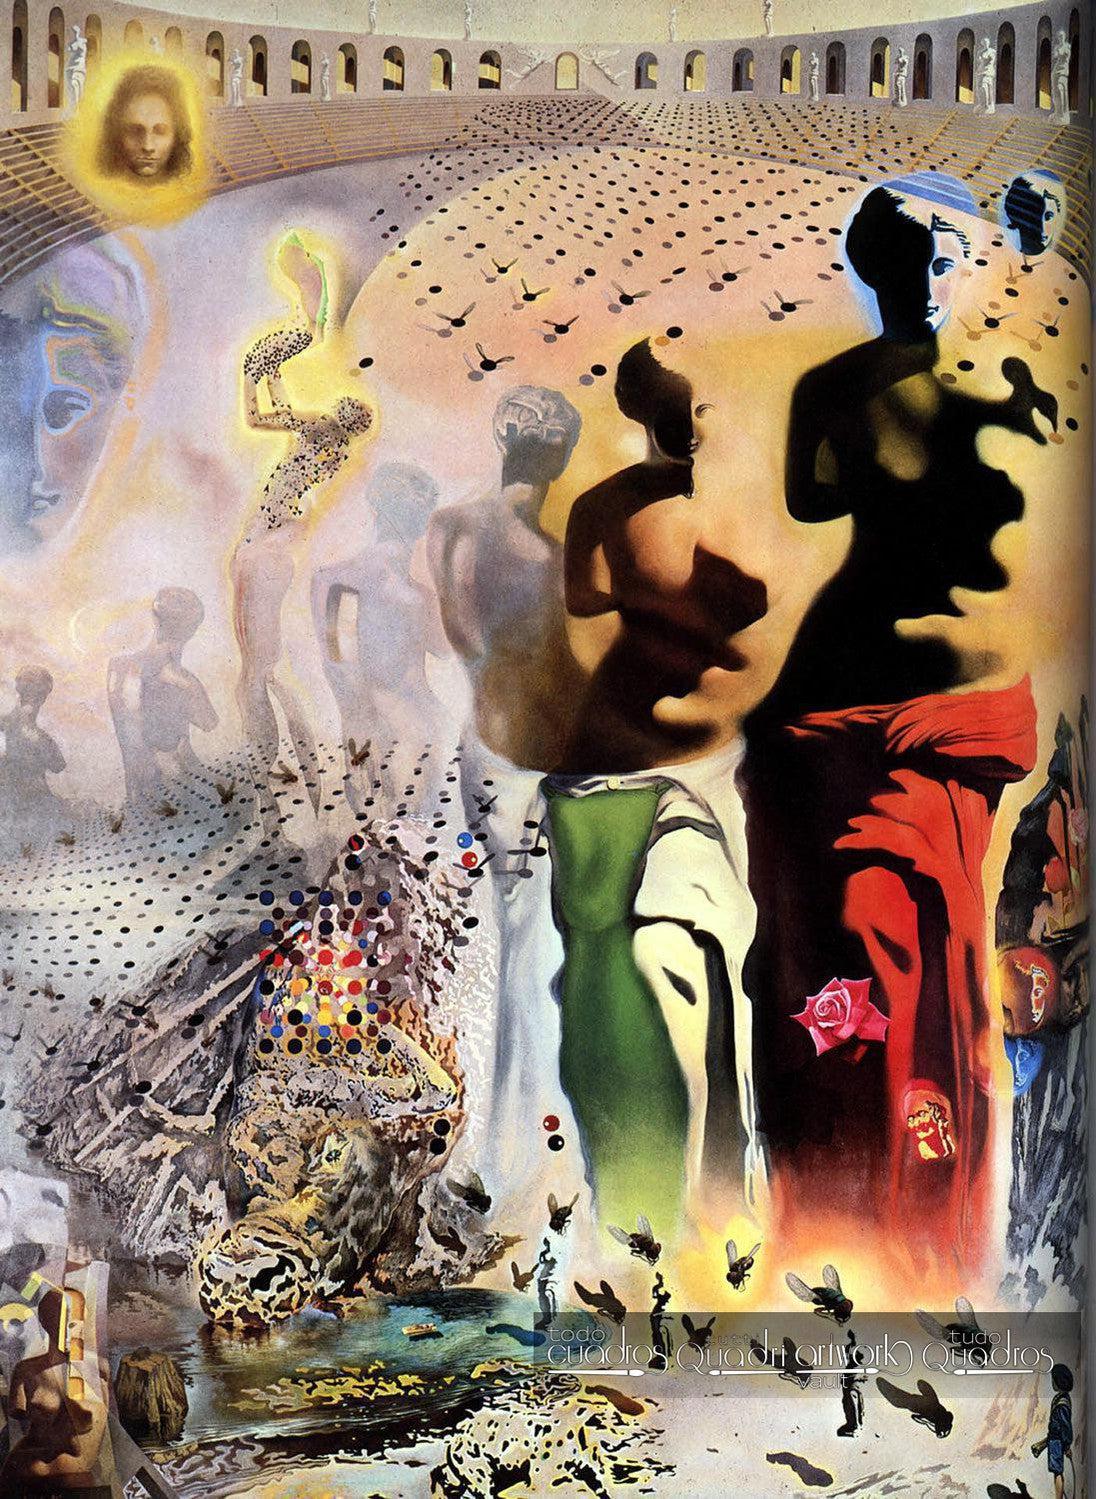 Il torero allucinogeno, Dalí